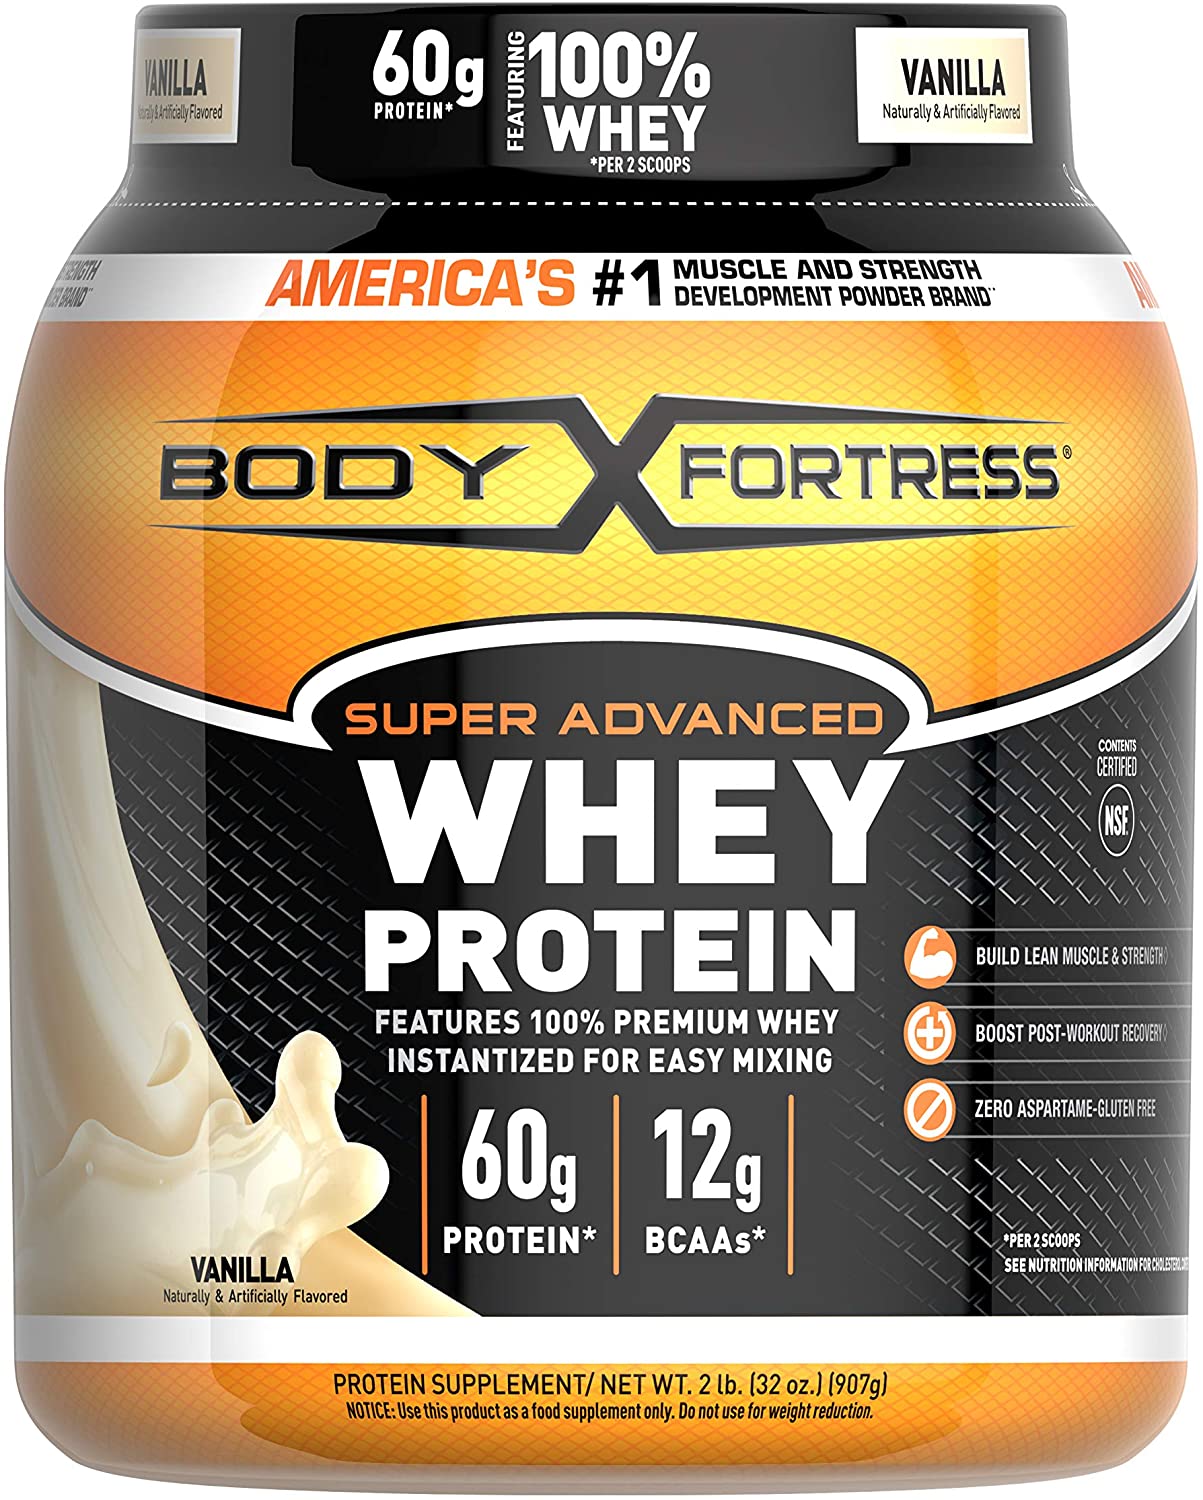 Body Fortress Super Advanced Whey Protein Powder, Vanilla Flavored, Gluten Free, 2 Lb $14.36